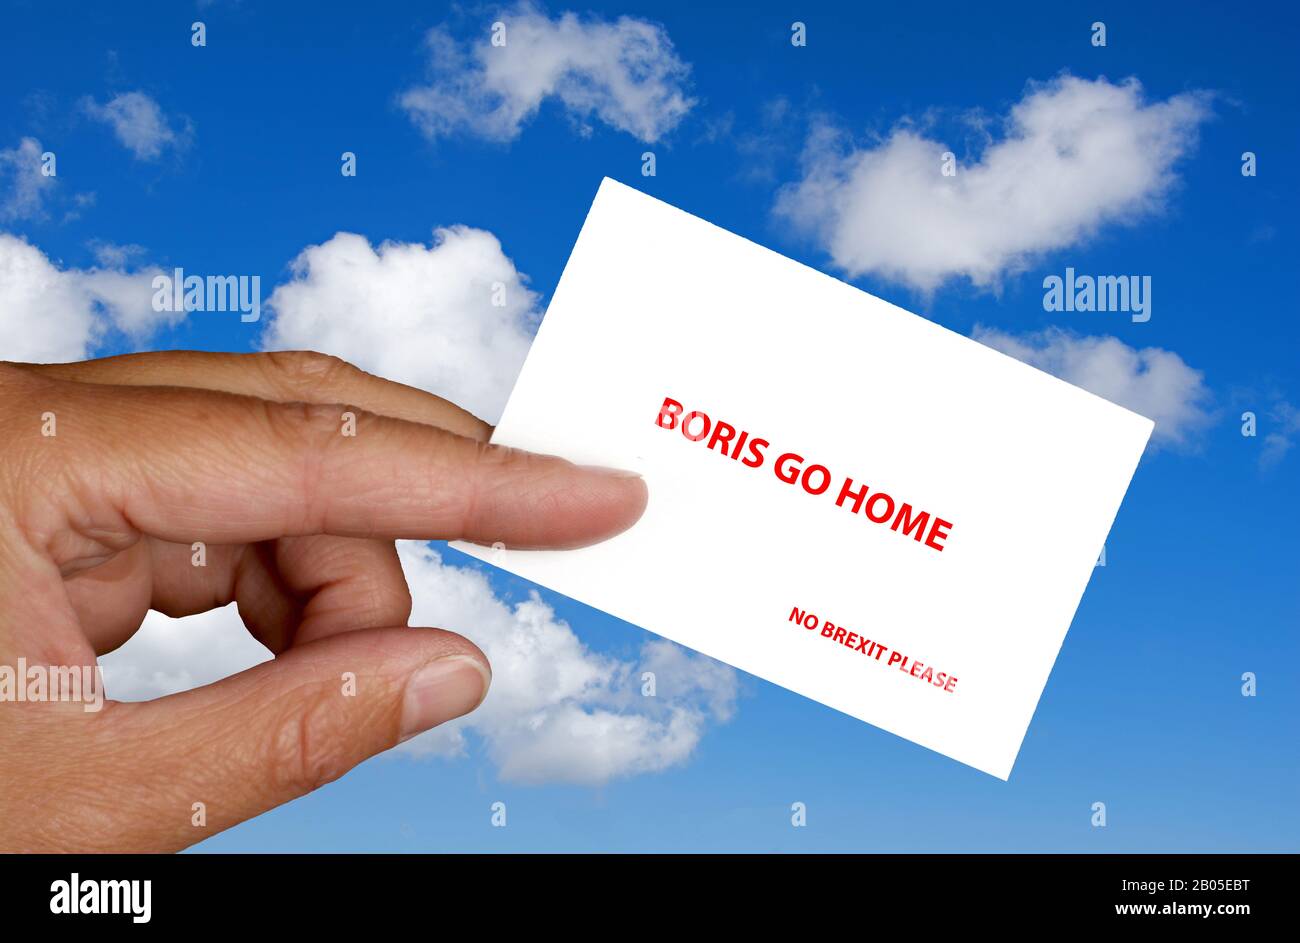 Mano contra el cielo azul con letras de la tarjeta Boris ir a casa, por favor, no Brexit, Alemania Foto de stock